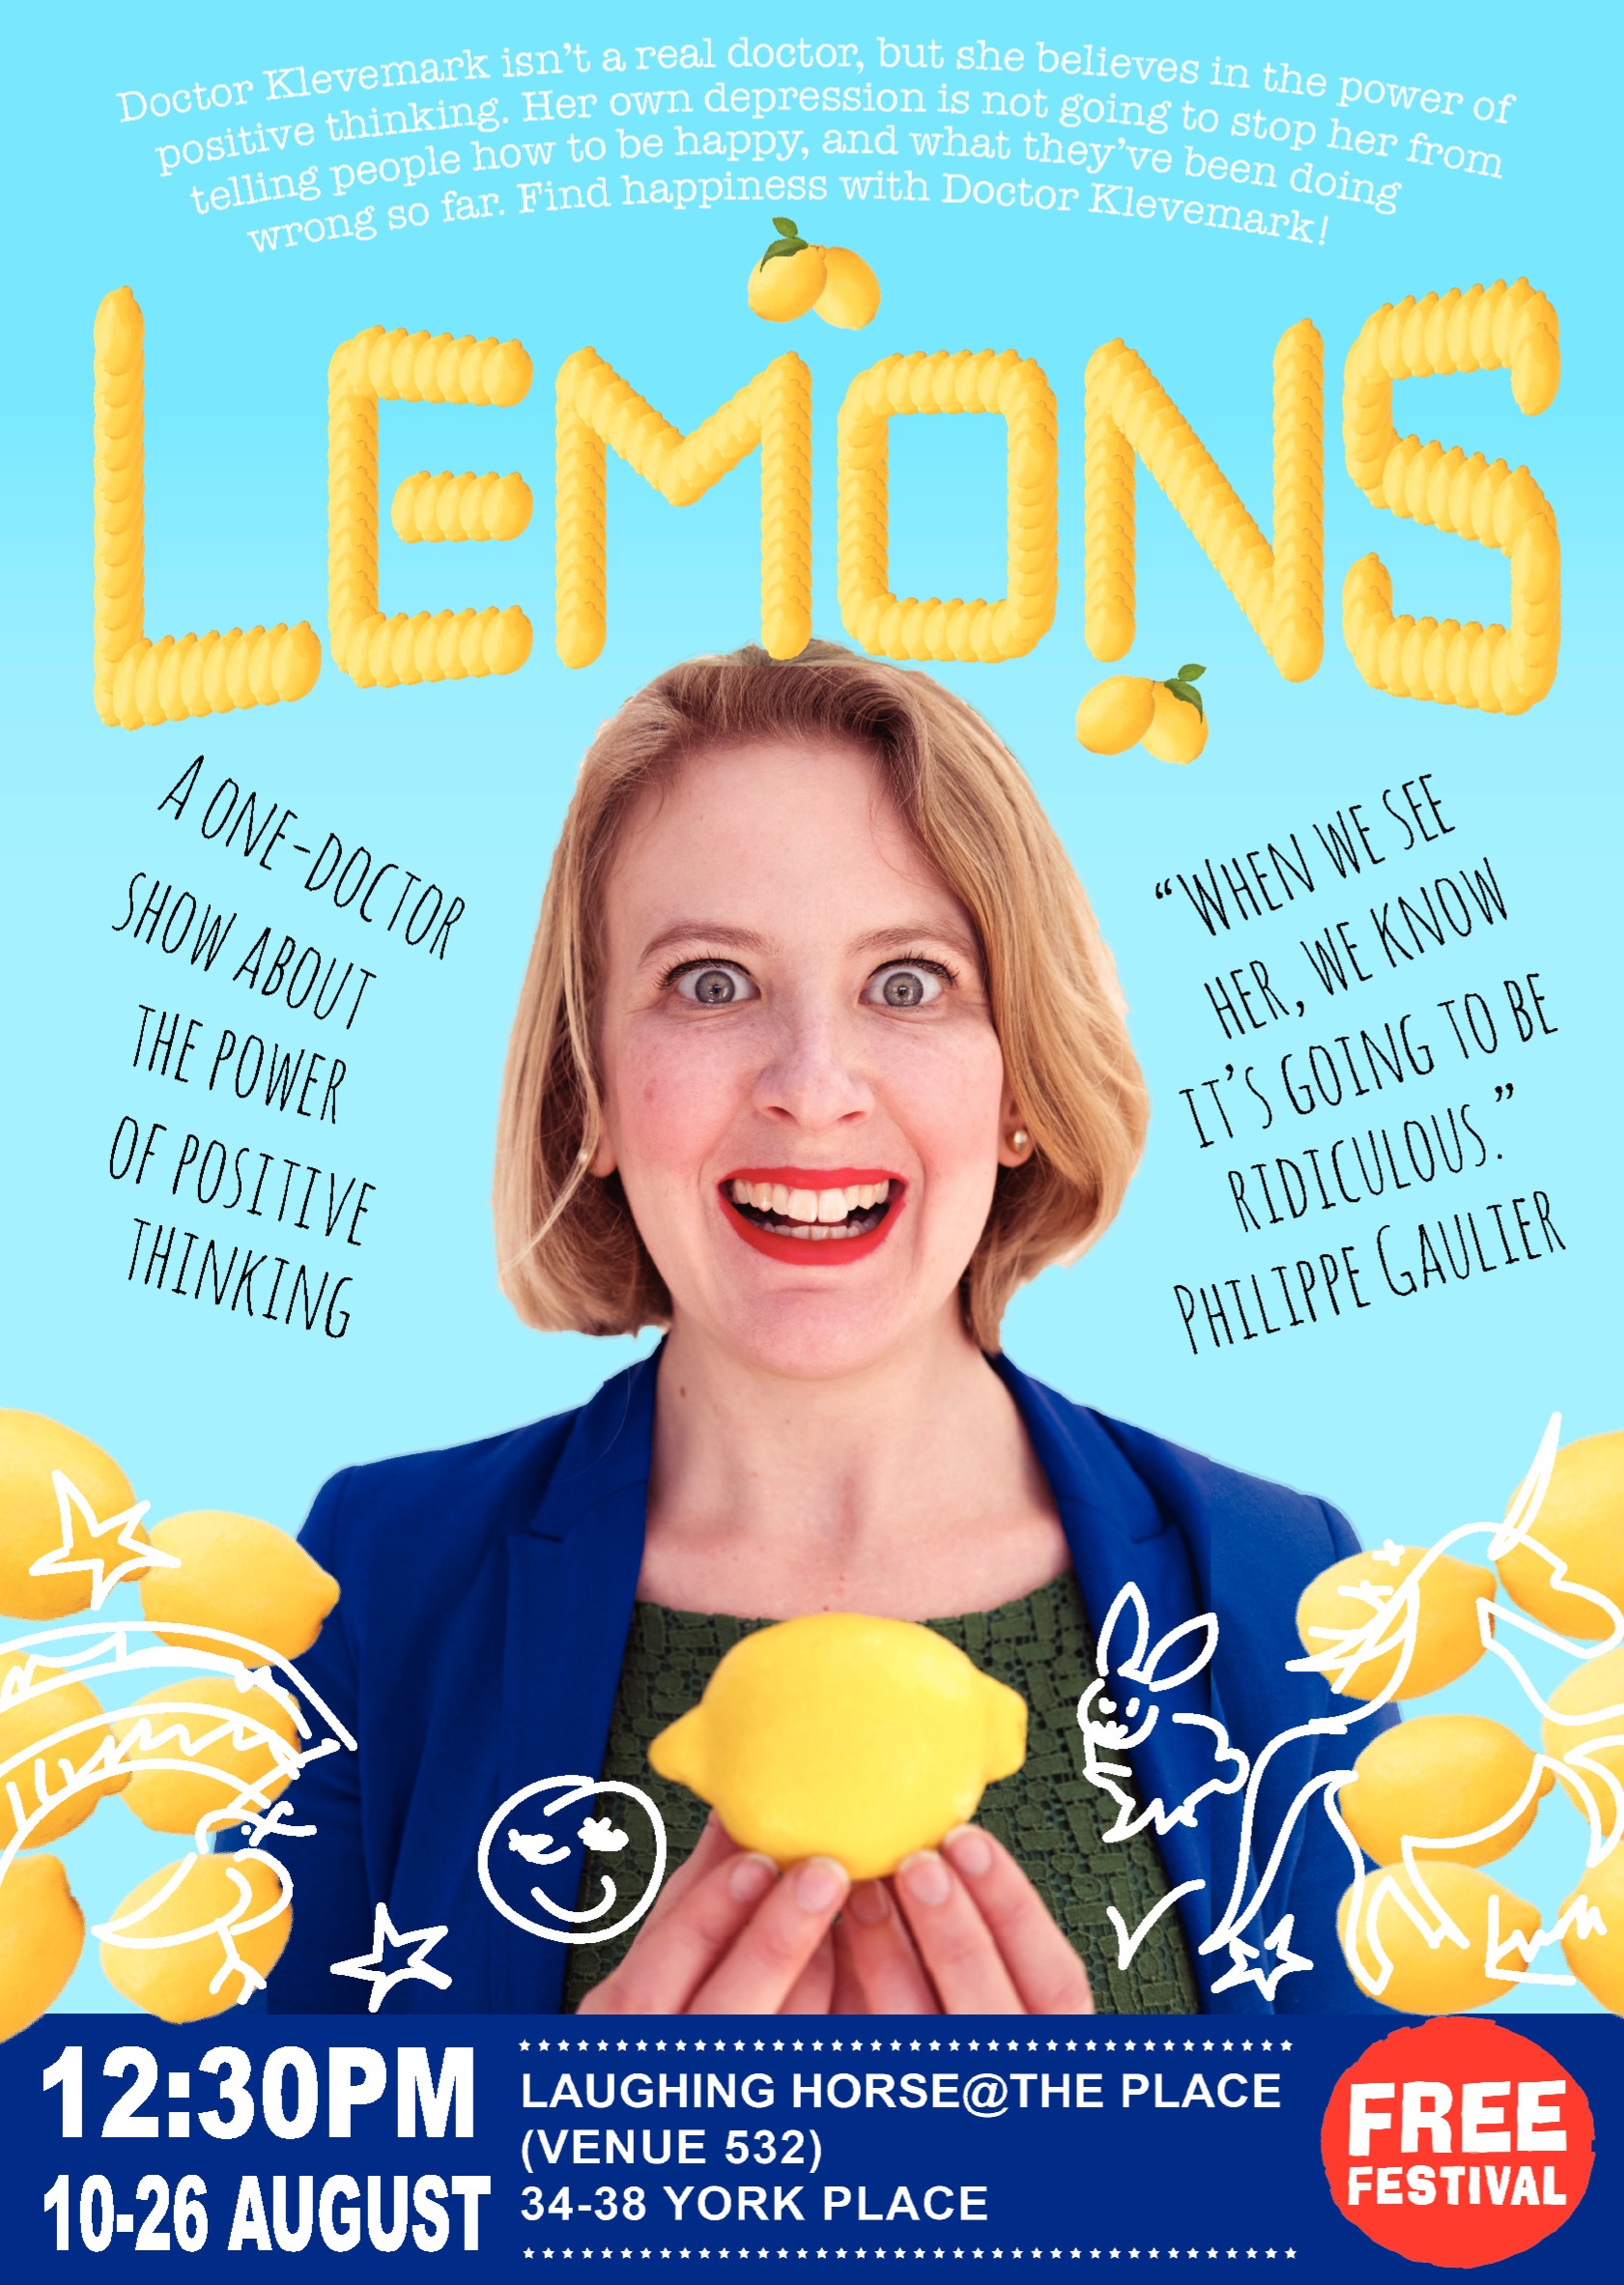 The poster for Lemons